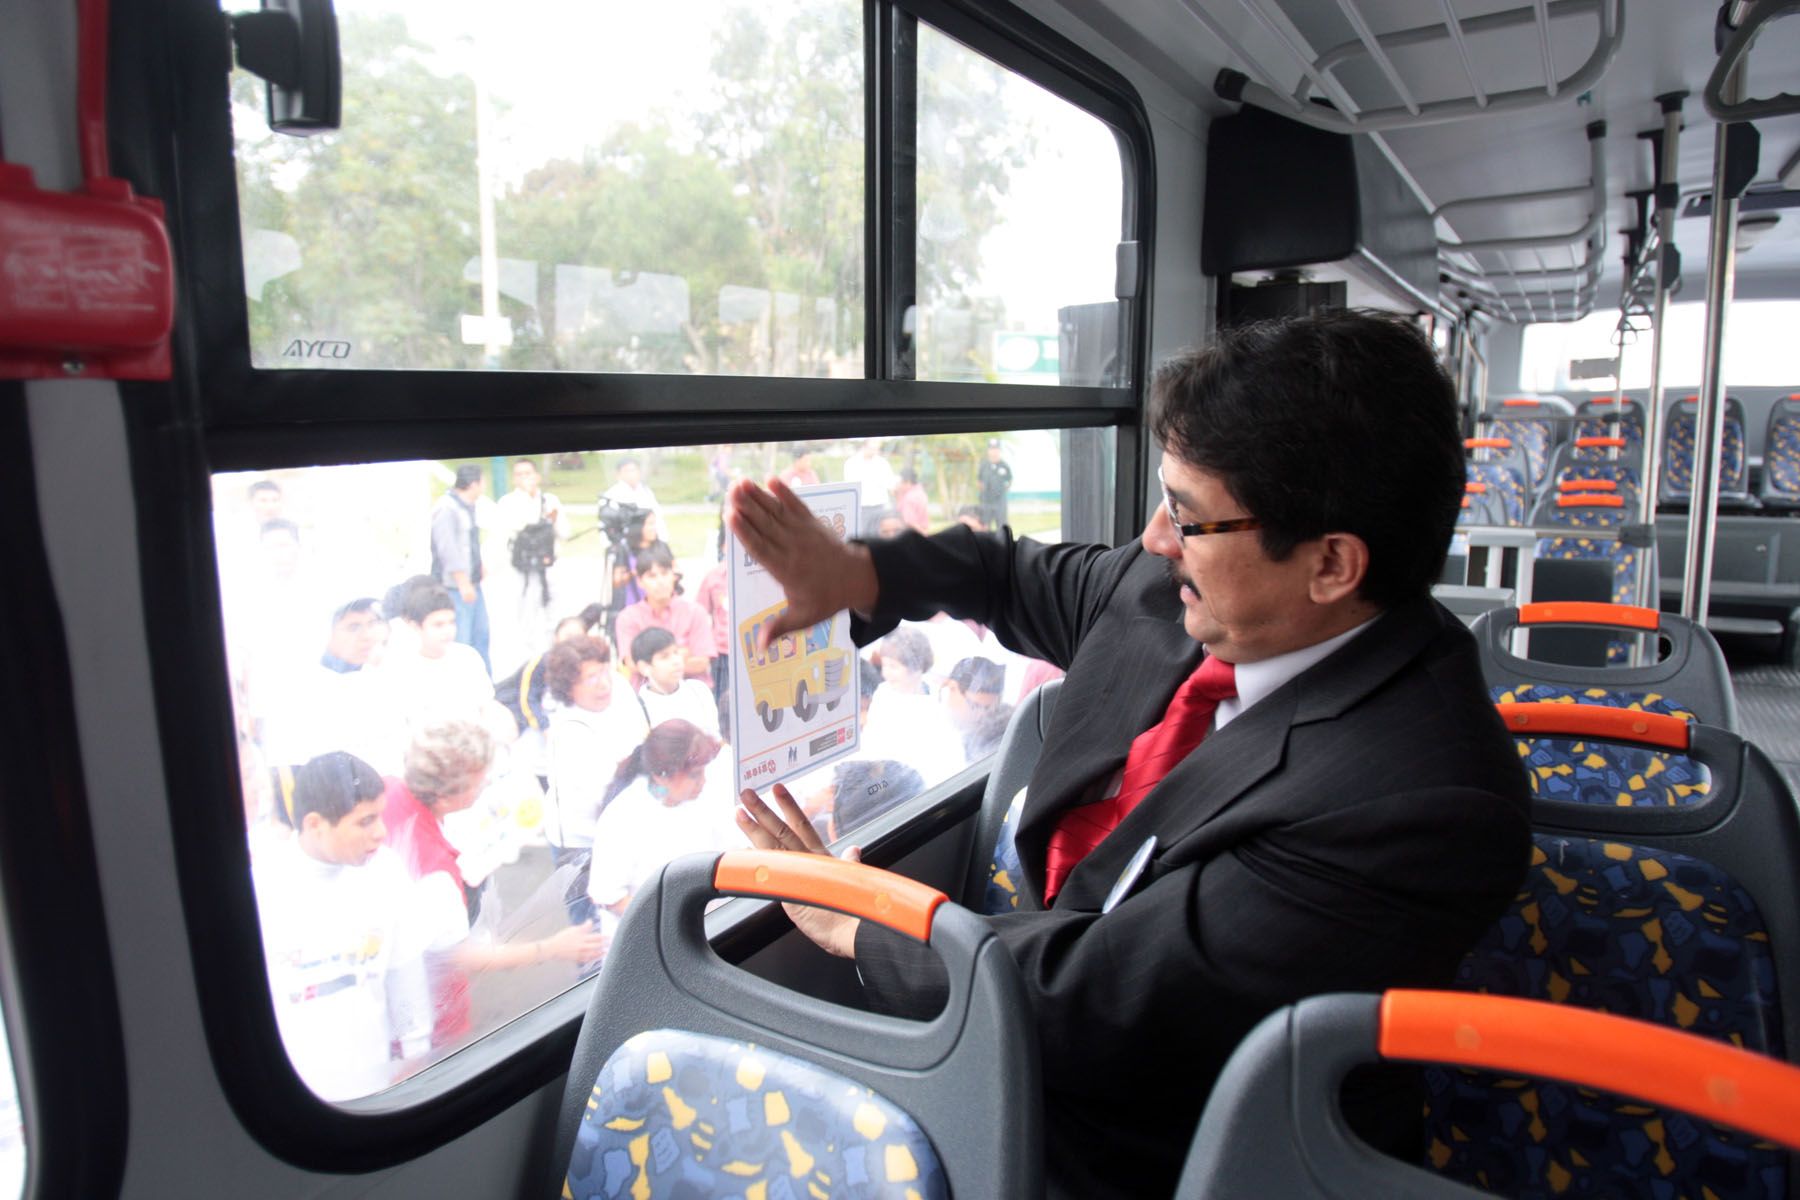 El ministro de Transportes y Comunicaciones, Enrique Cornejo, lanzó campaña "Soy como Tú" promoviendo el traslado digno en el transporte público a personas con habilidades diferentes.Foto: ANDINA/Juan Carlos Guzmán Negrini.